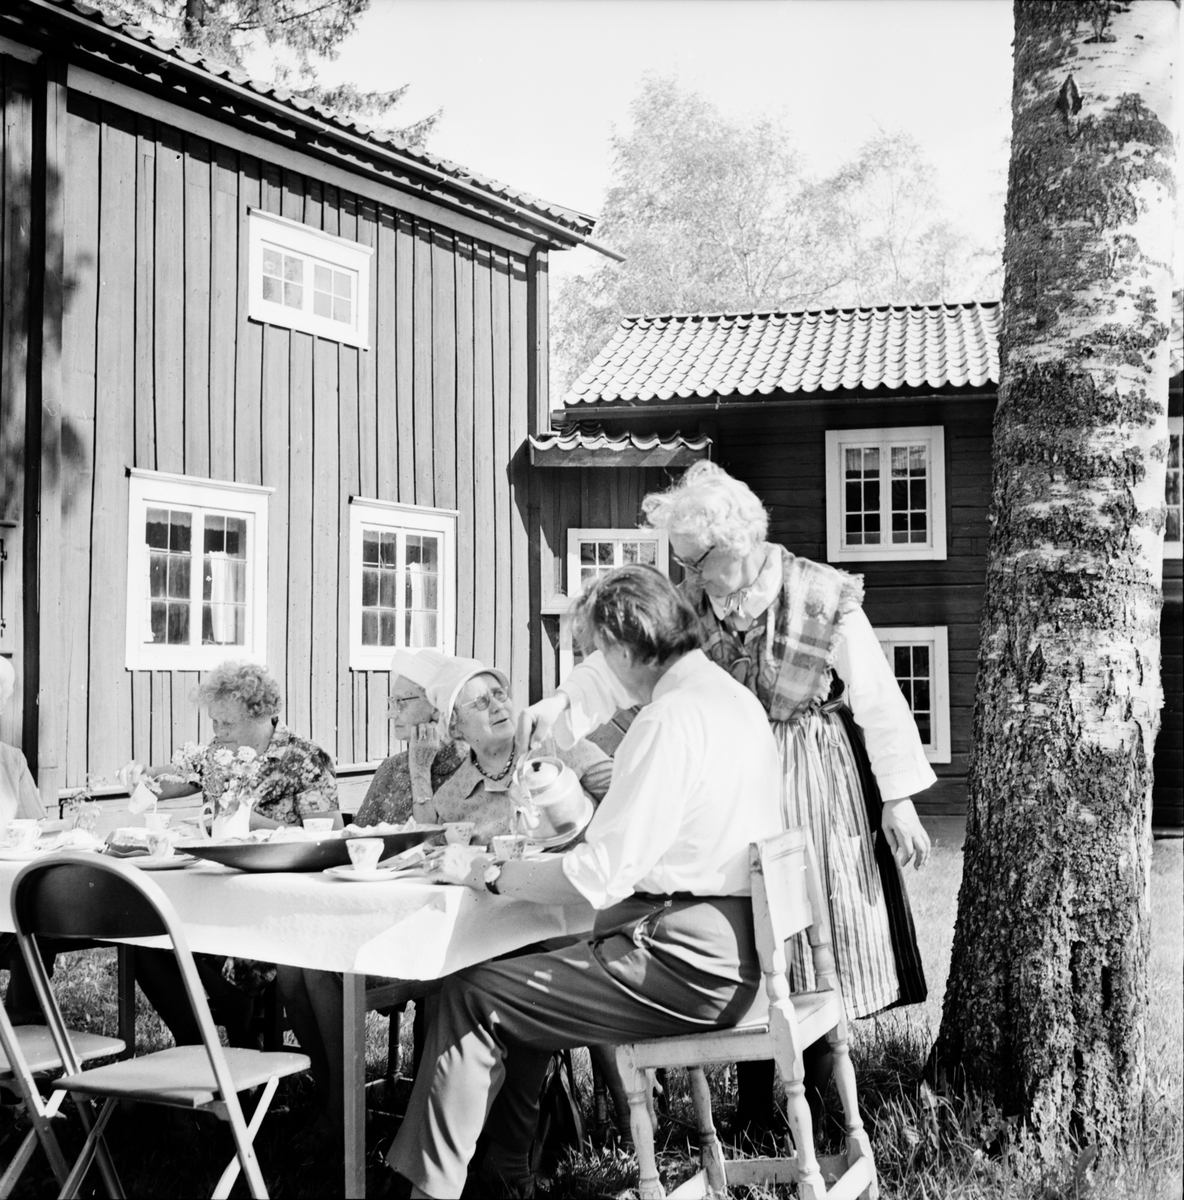 Arbrå,
Sykretsen på Fornhemmet,
Juni 1971